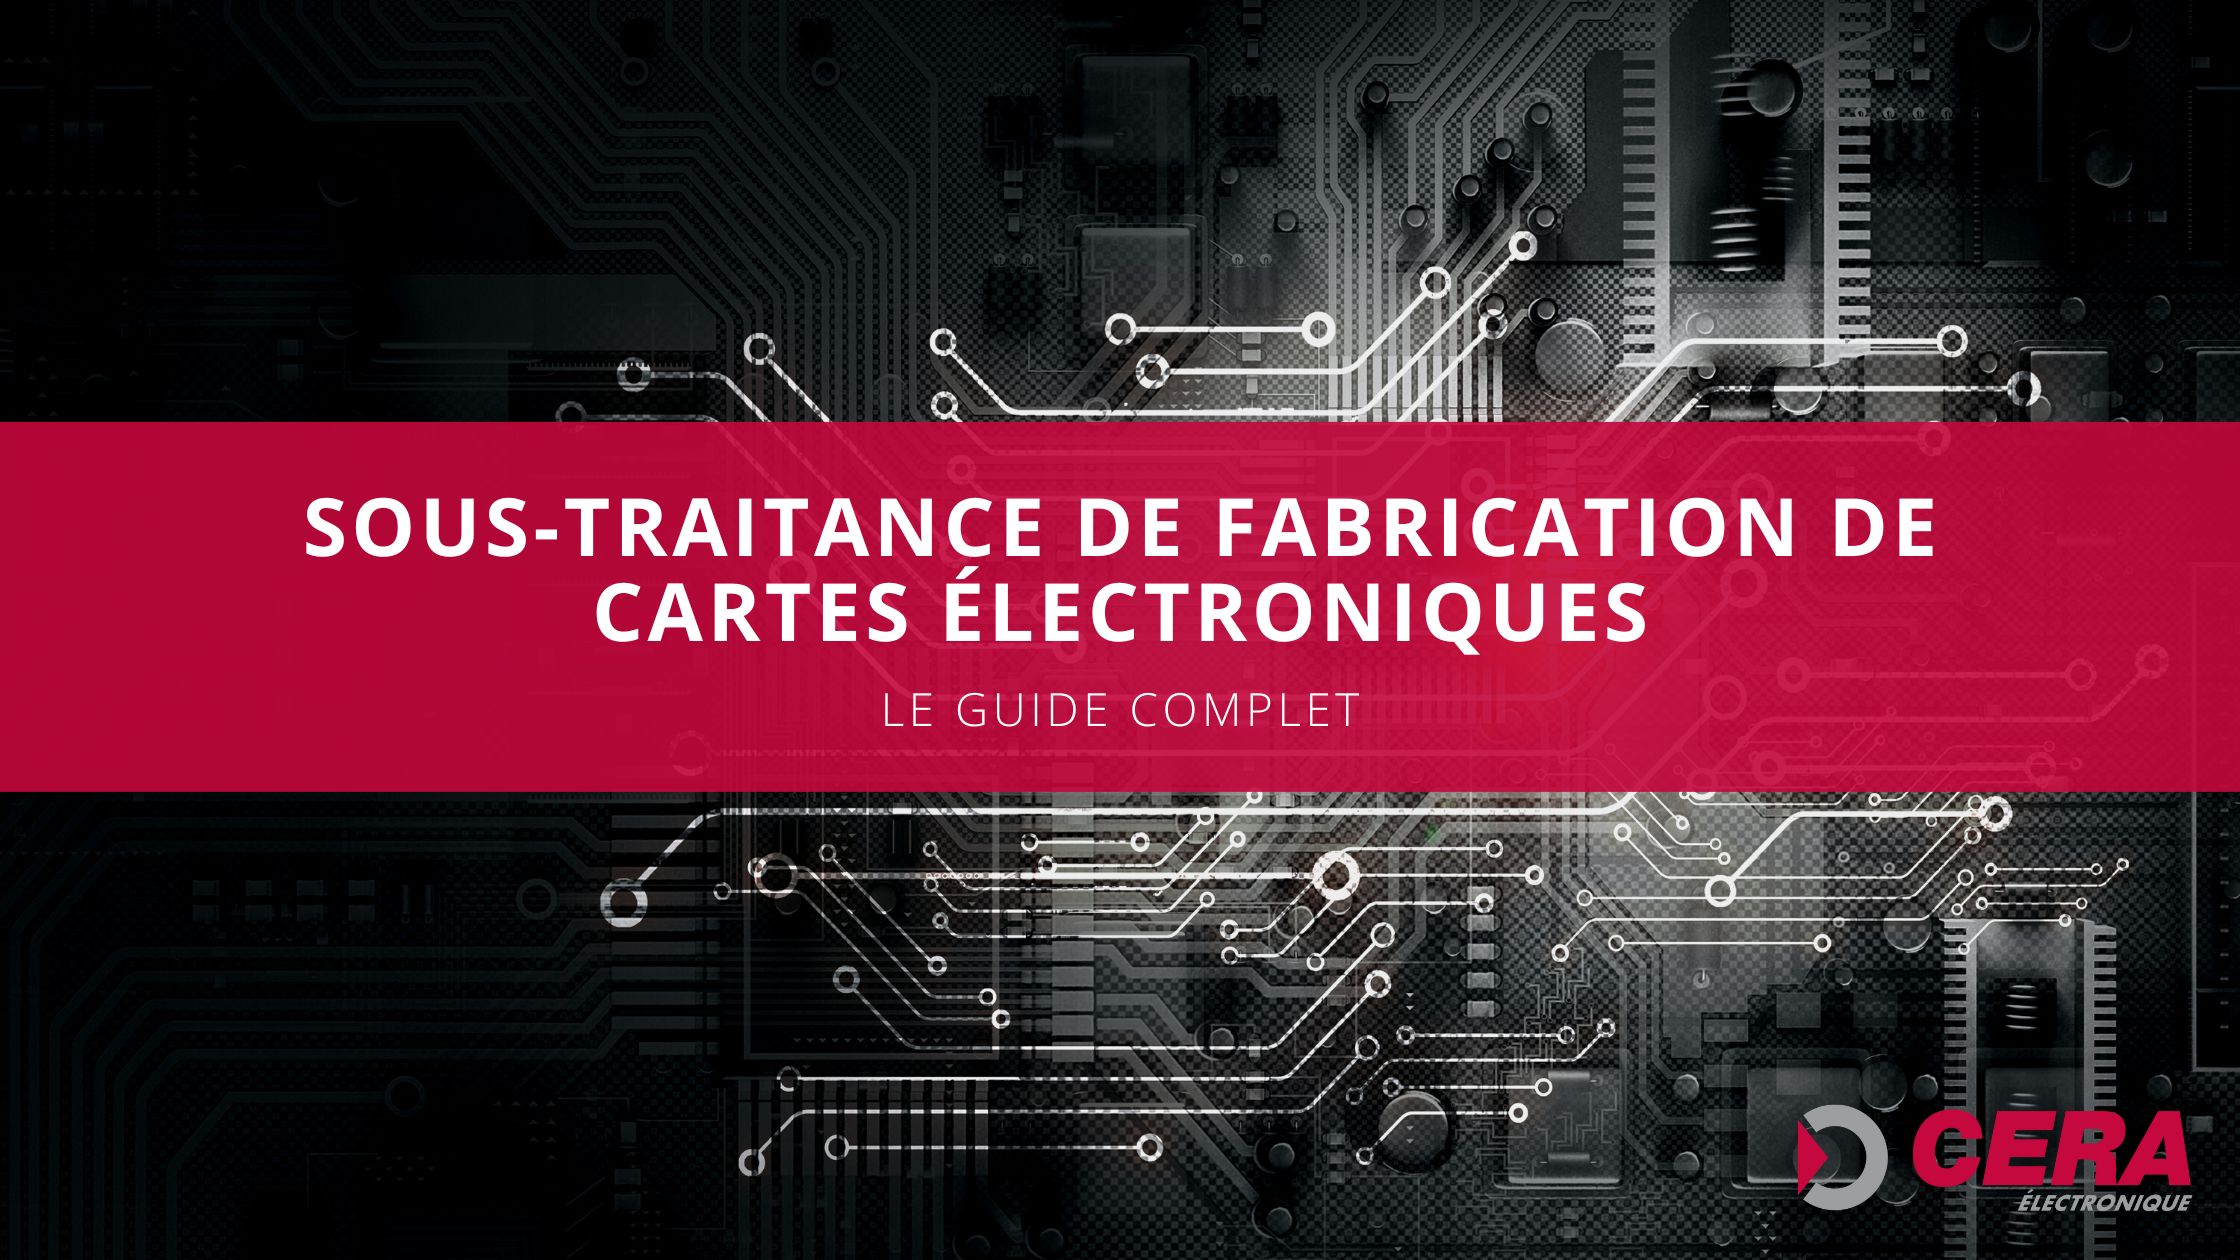 • La sous-traitance de fabrication de cartes électroniques est une solution efficace pour les PME en France.